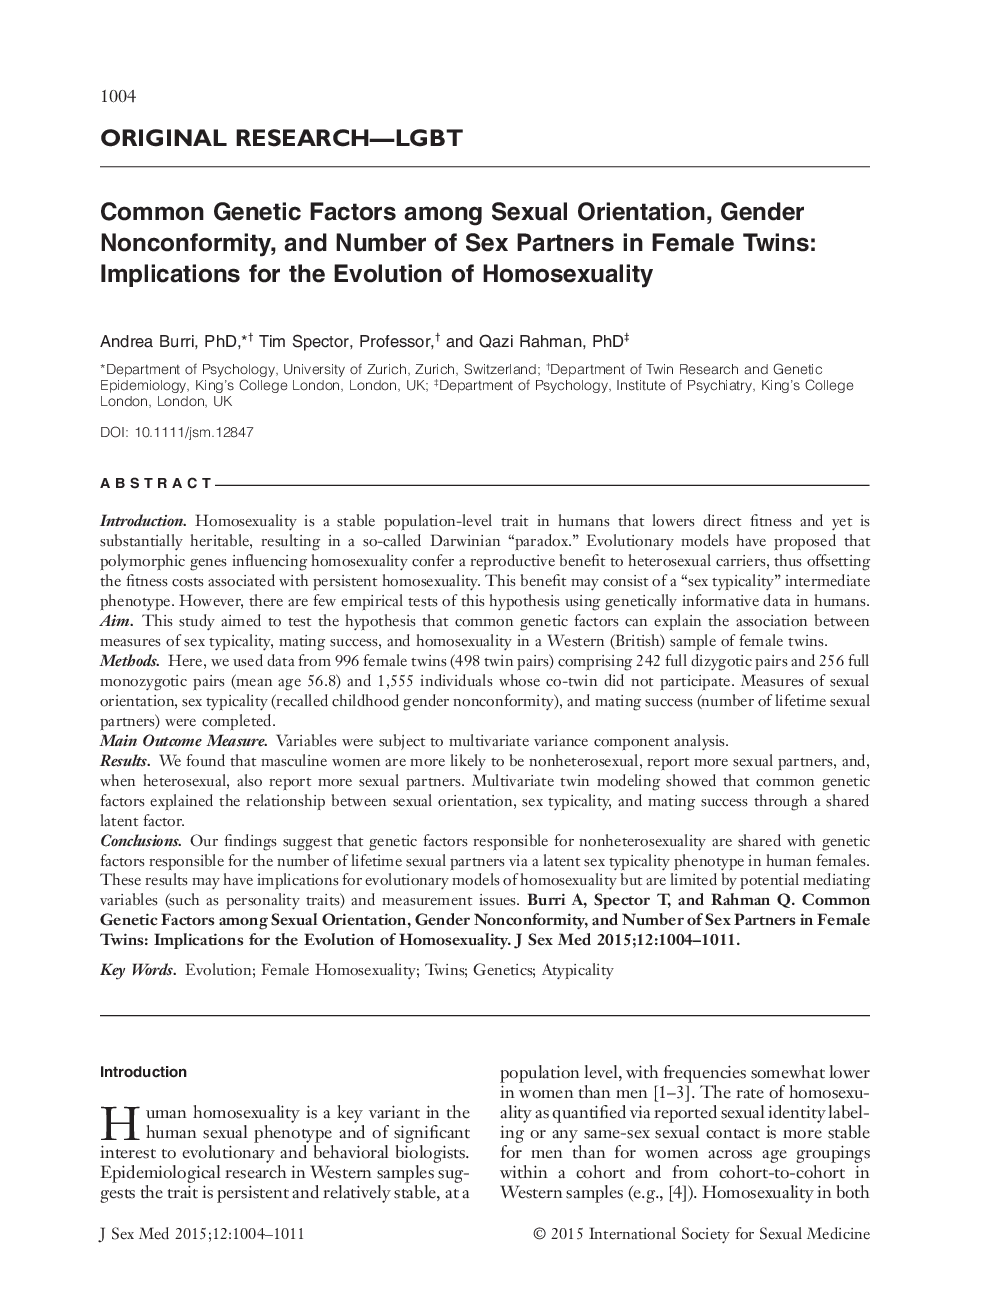 عوامل ژنتیکی مشترک در میان گرایش جنسی، عدم انطباق جنسیتی و تعداد شرکای جنسی در دوقلوها زن: پیامدهای تکامل همجنسگرایی 